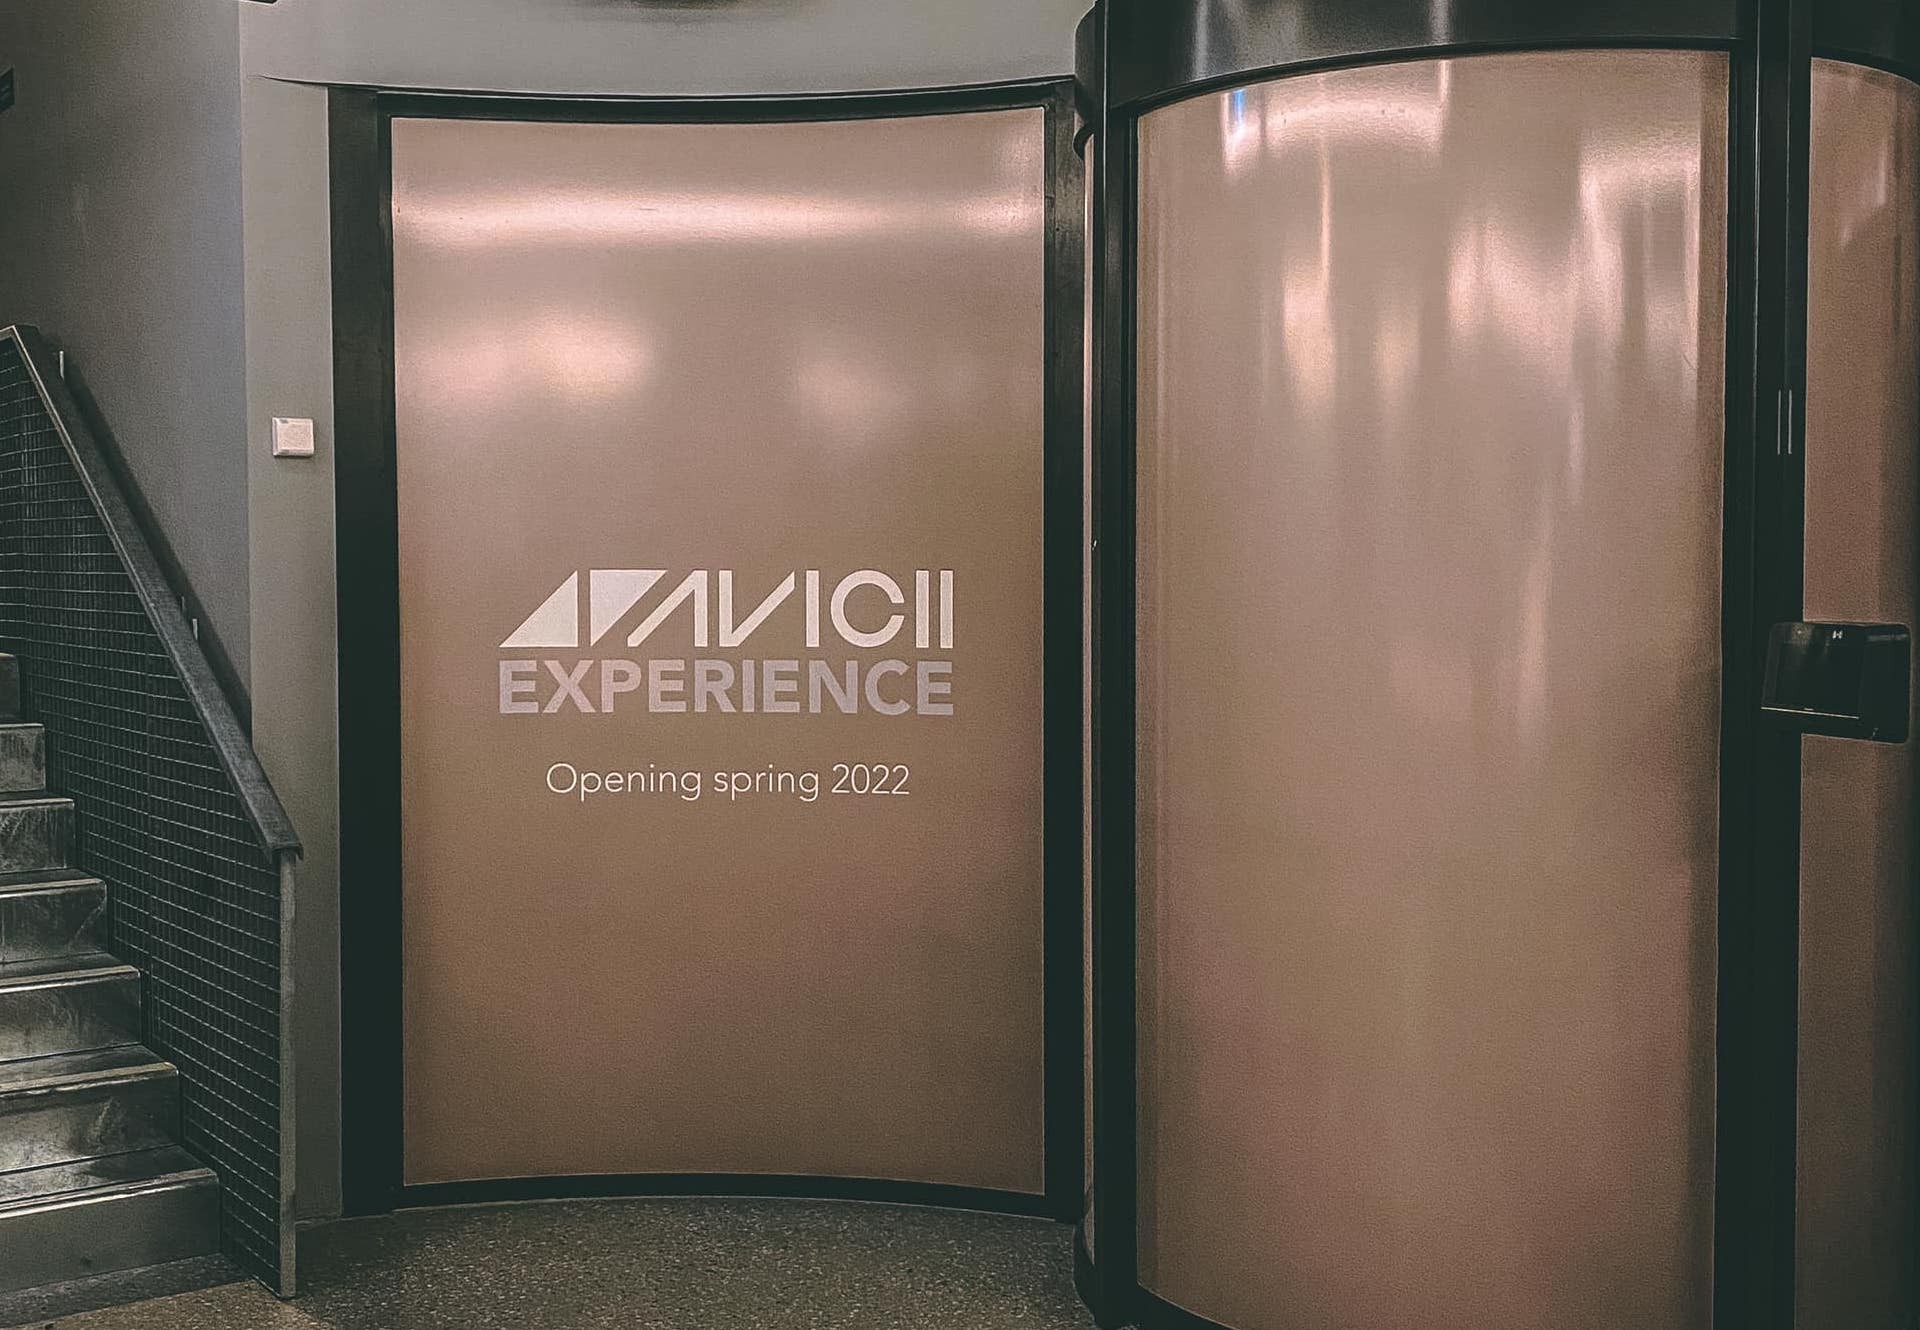 Triển Lãm Avicii Experience Sẽ Mở Cửa Vào Mùa Xuân Năm 2022